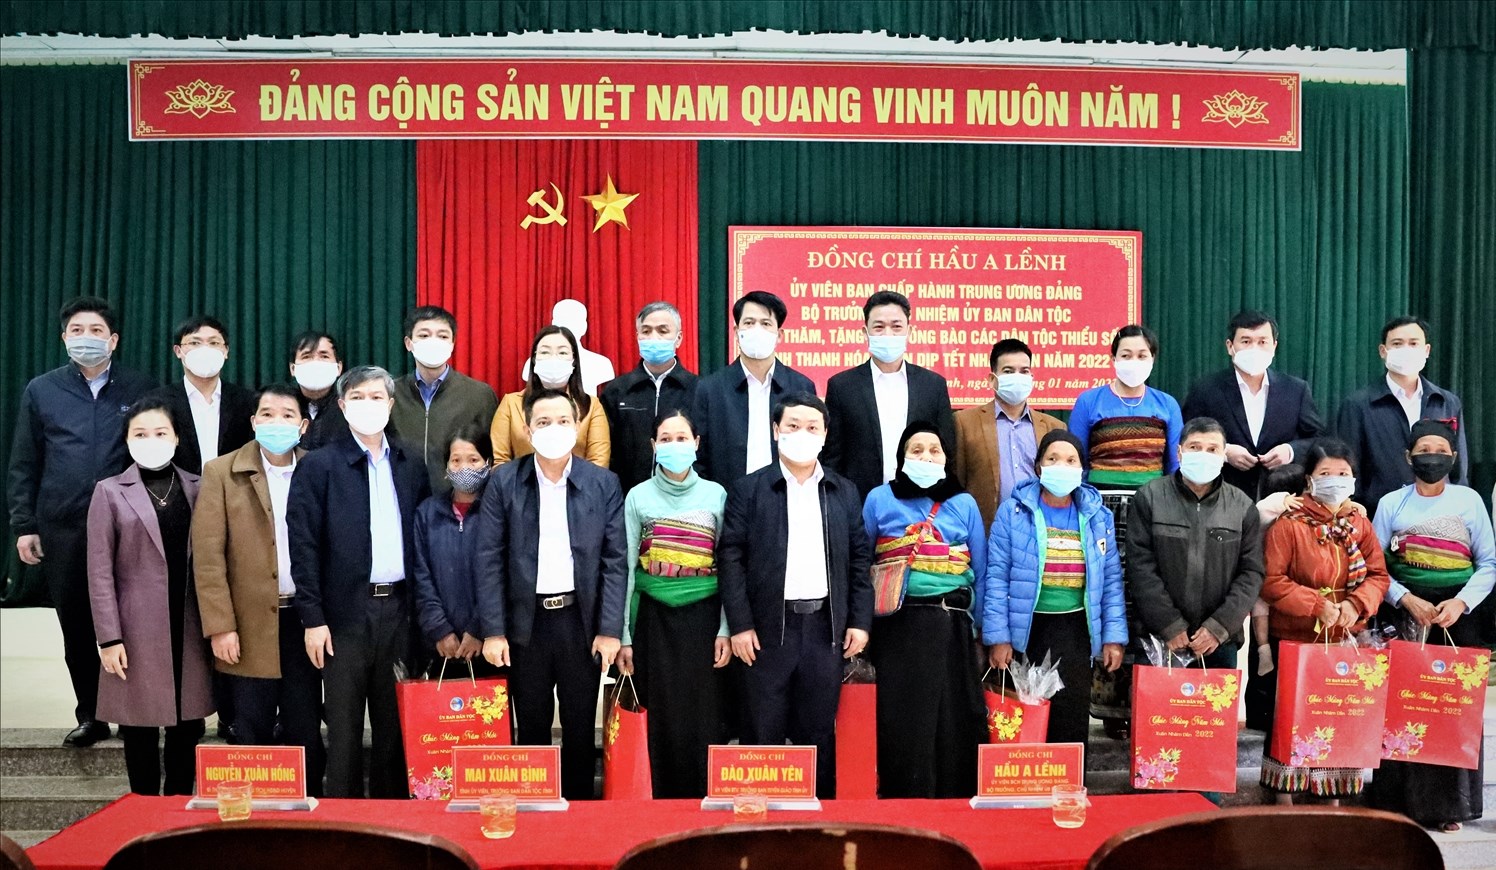 Bộ trưởng, Chủ nhiệm Uỷ ban Dân tộc Hầu A Lềnh chụp ảnh lưu niệm cùng cán bộ và đồng bào DTTS huyện Lạng Chánh